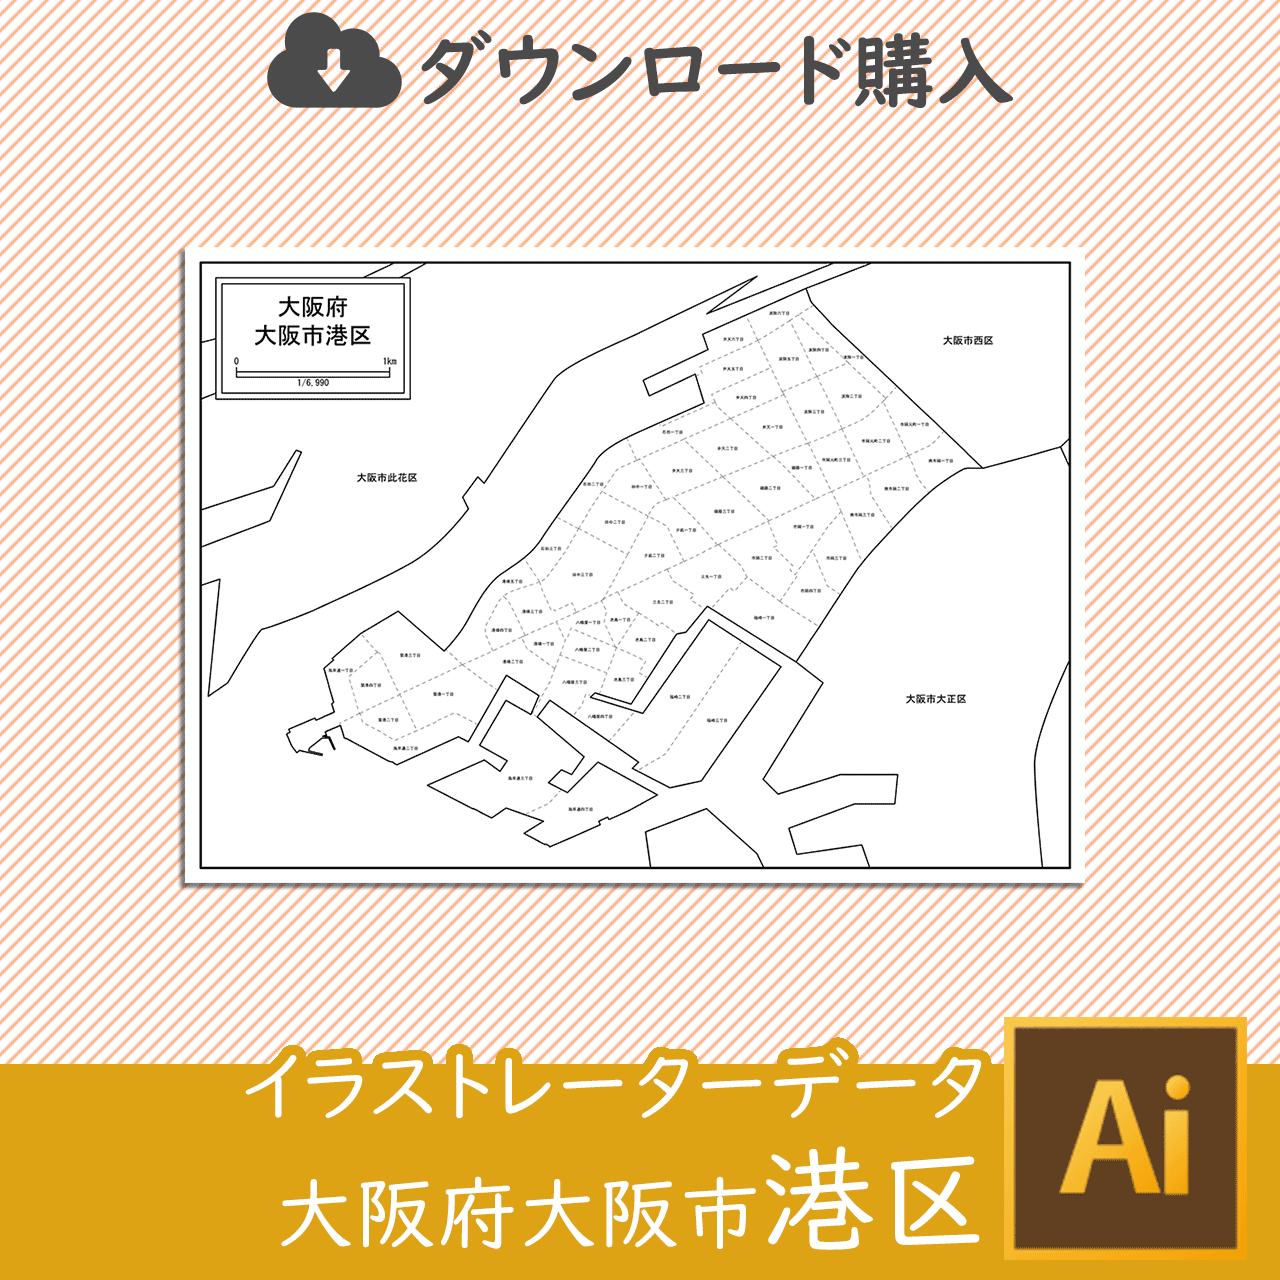 大阪市港区の白地図のサムネイル画像